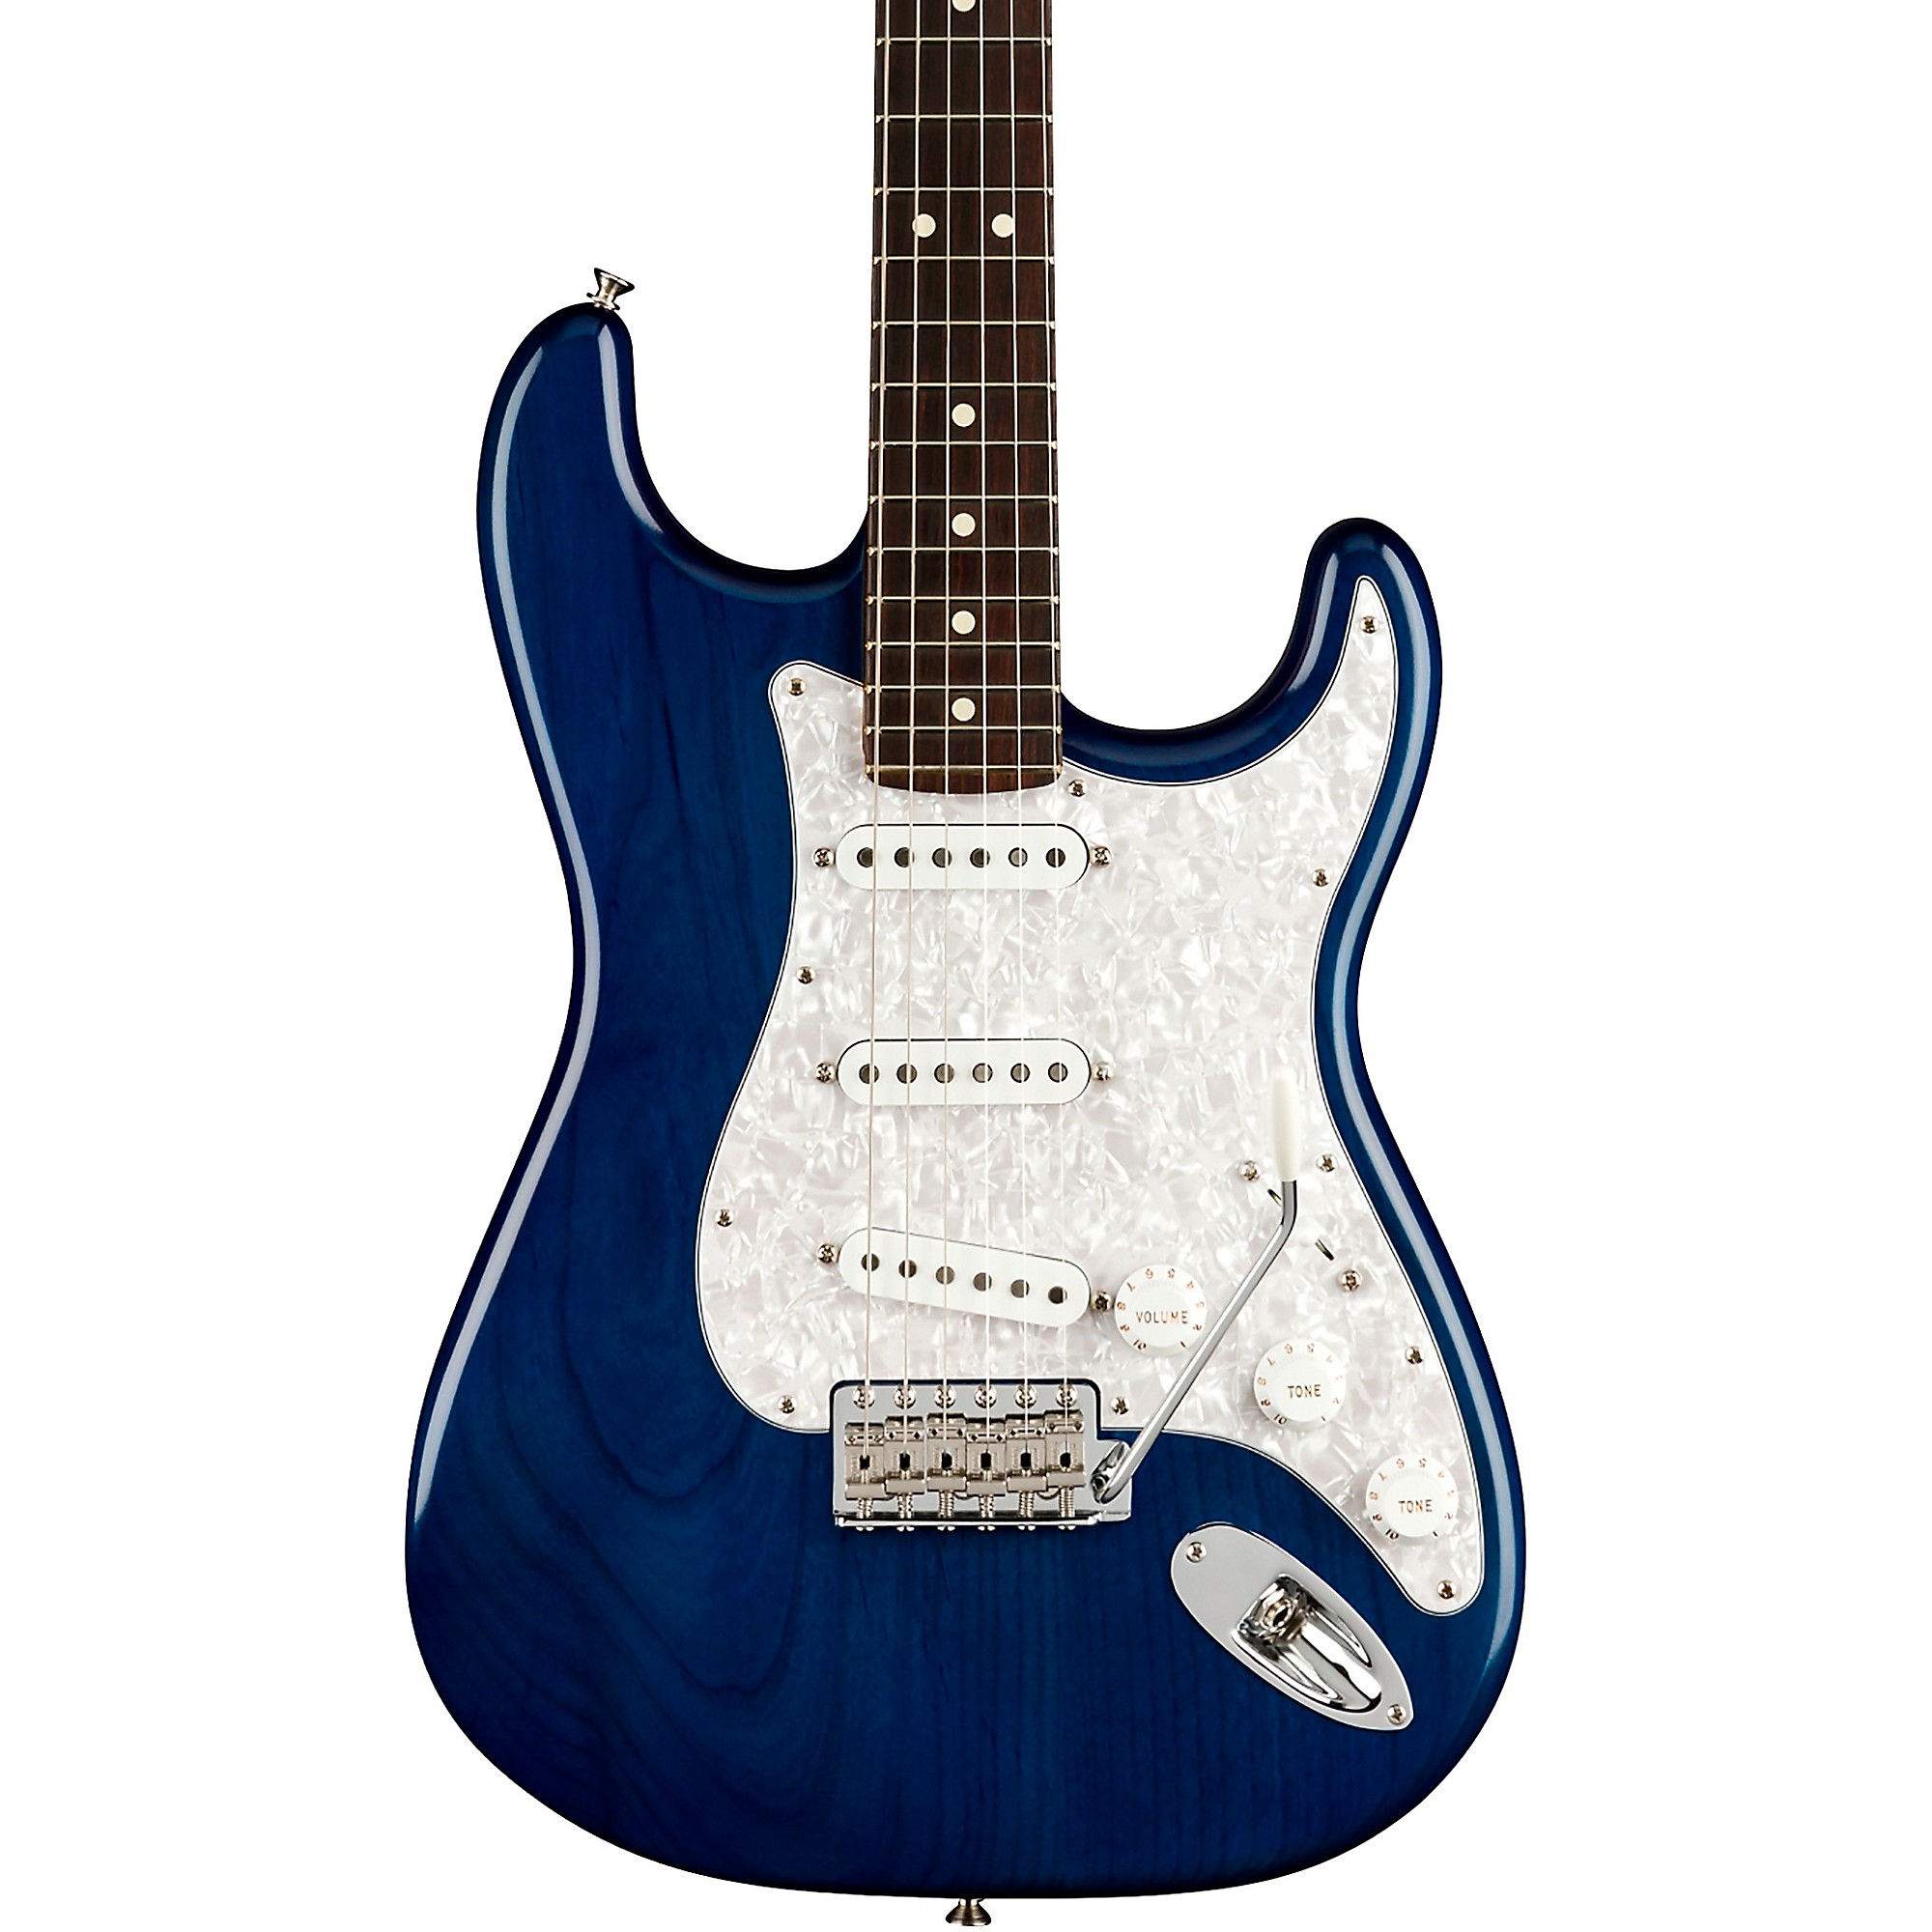 Fender Cory Wong Stratocaster Электрогитара с накладкой из палисандра, прозрачный сапфировый синий